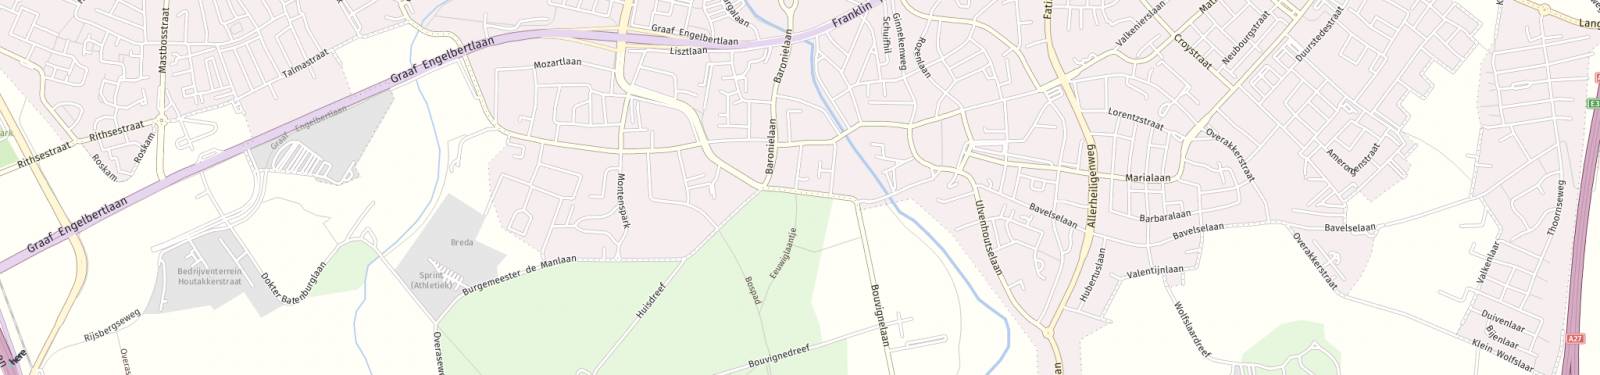 Kaart met locatie Appartement Duivelsbruglaan